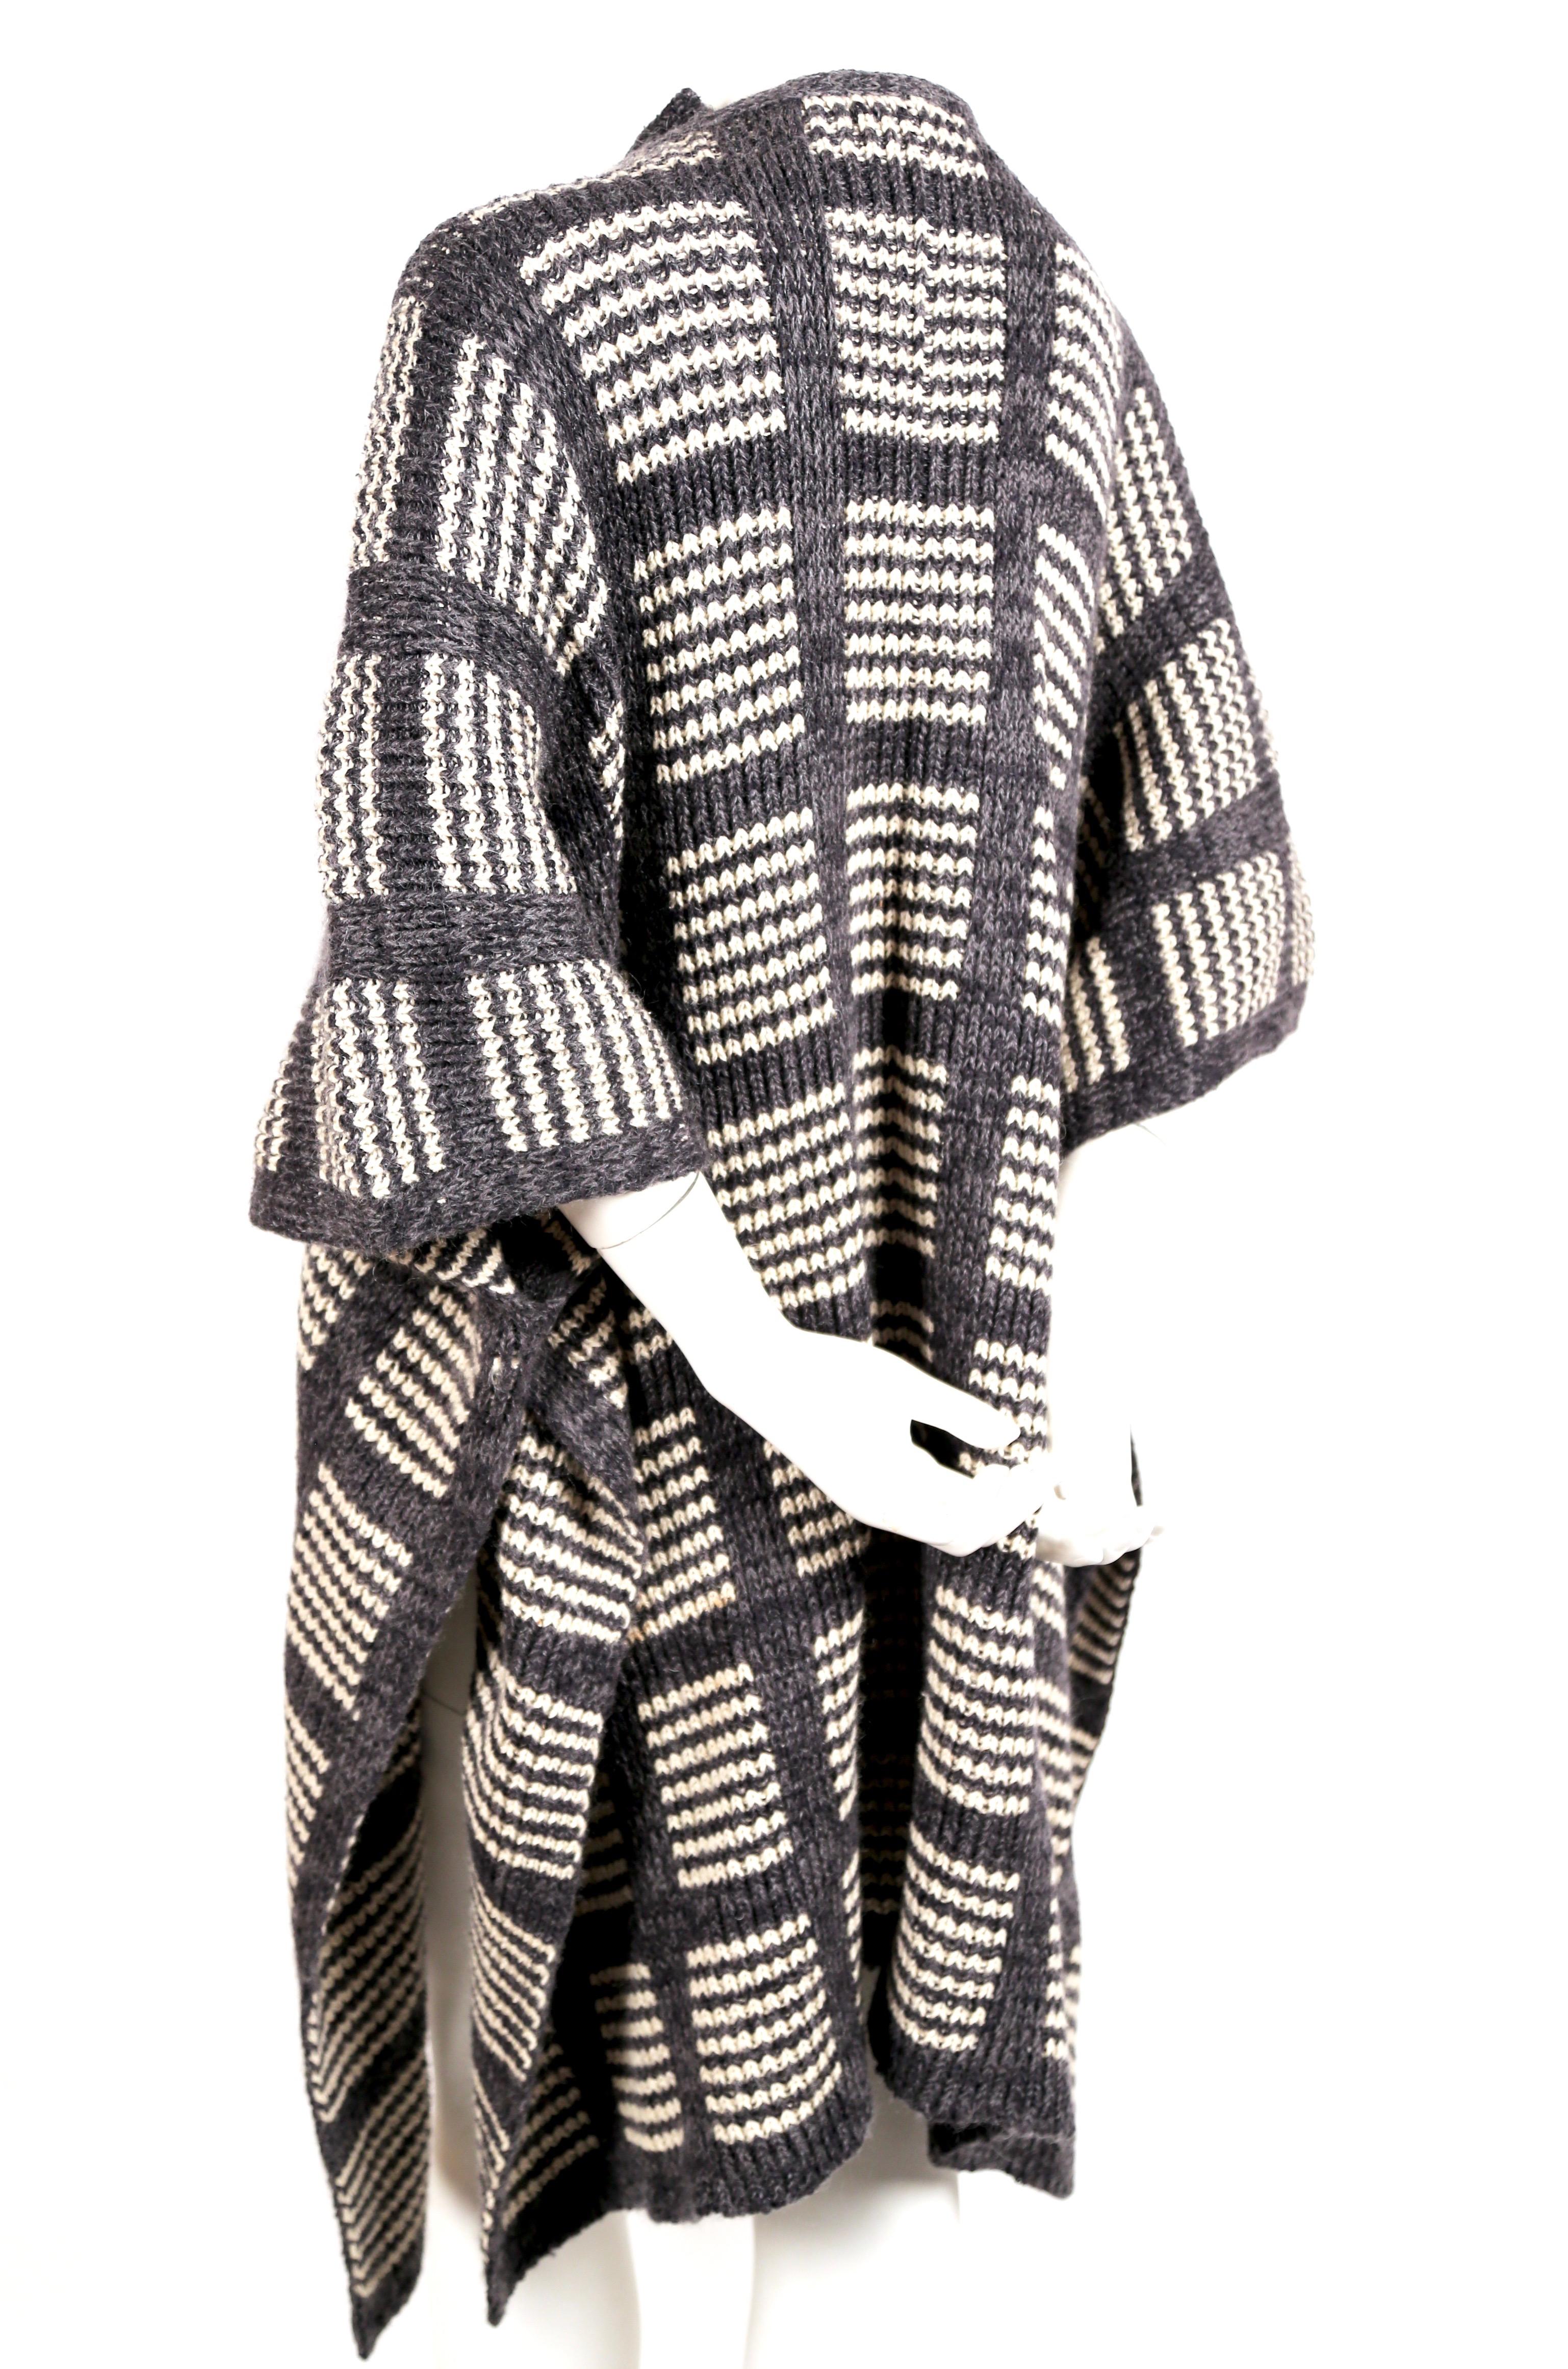 Sehr seltener, grau-weißer Strickponcho-Cape-Mantel von Issey Miyake aus den 1970er Jahren. Größe S, passt aber durch den lockeren Schnitt vielen Größen. Krawatten im Nacken. Inhalt des Stoffes: 50% Wolle 30% Seide, 10% Acryl und 10% Nylon.